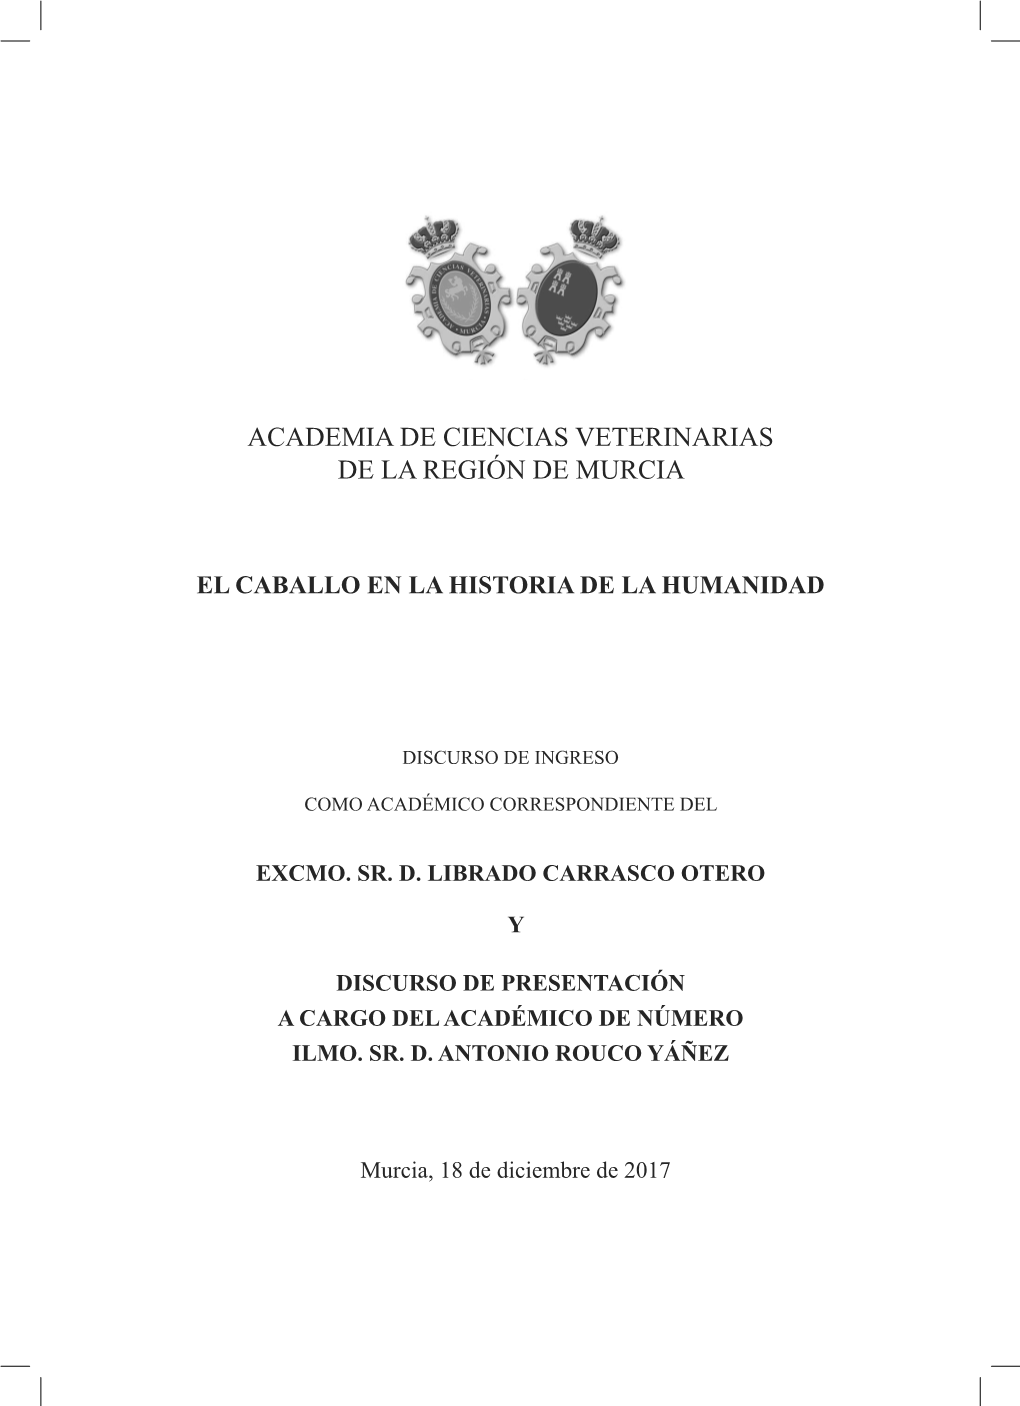 Academia De Ciencias Veterinarias De La Región De Murcia